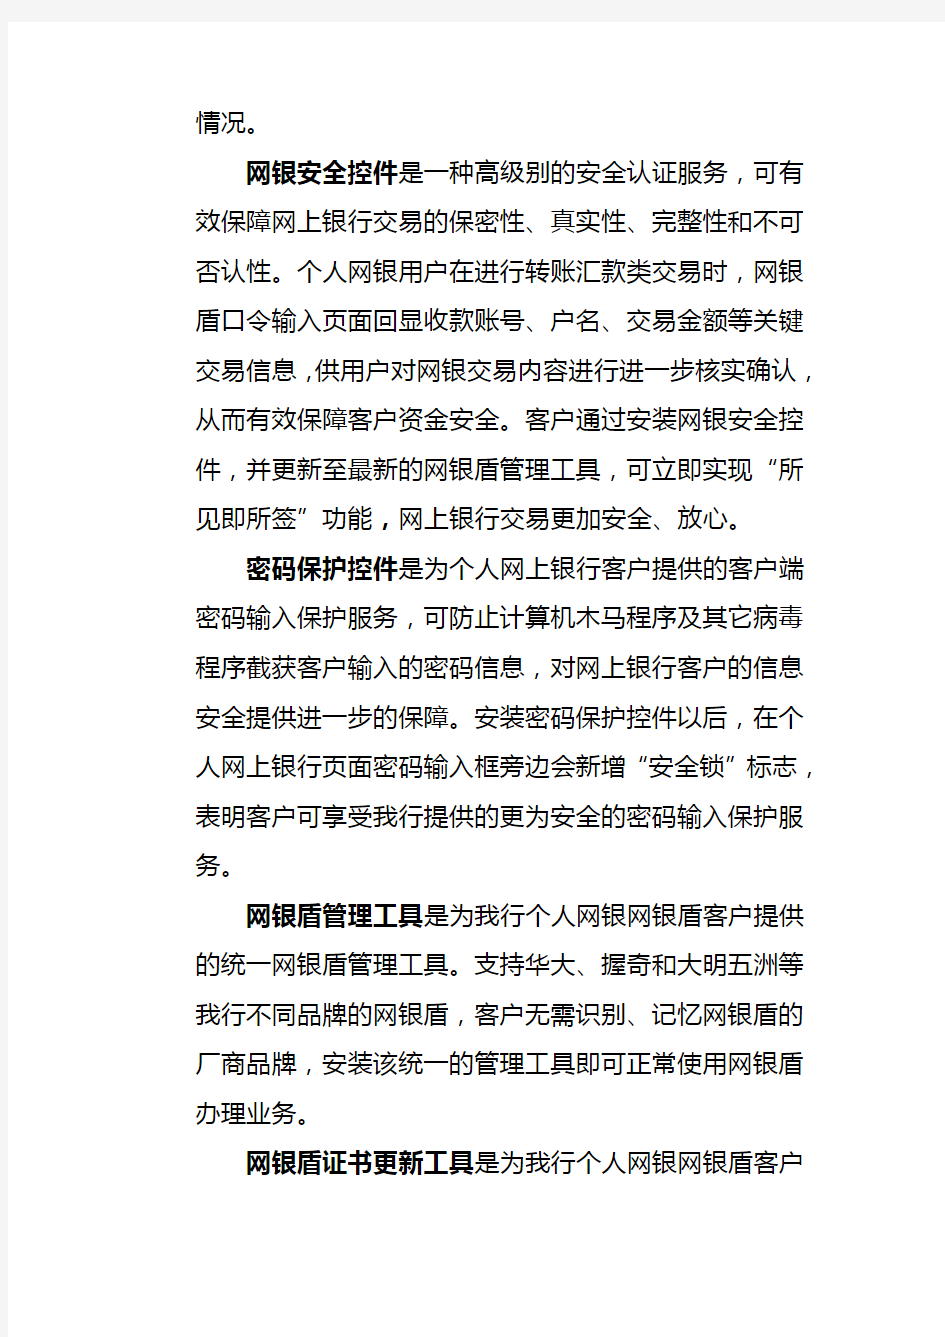 中国建设银行E路护航网银安全组件(64位版)客户使用指南